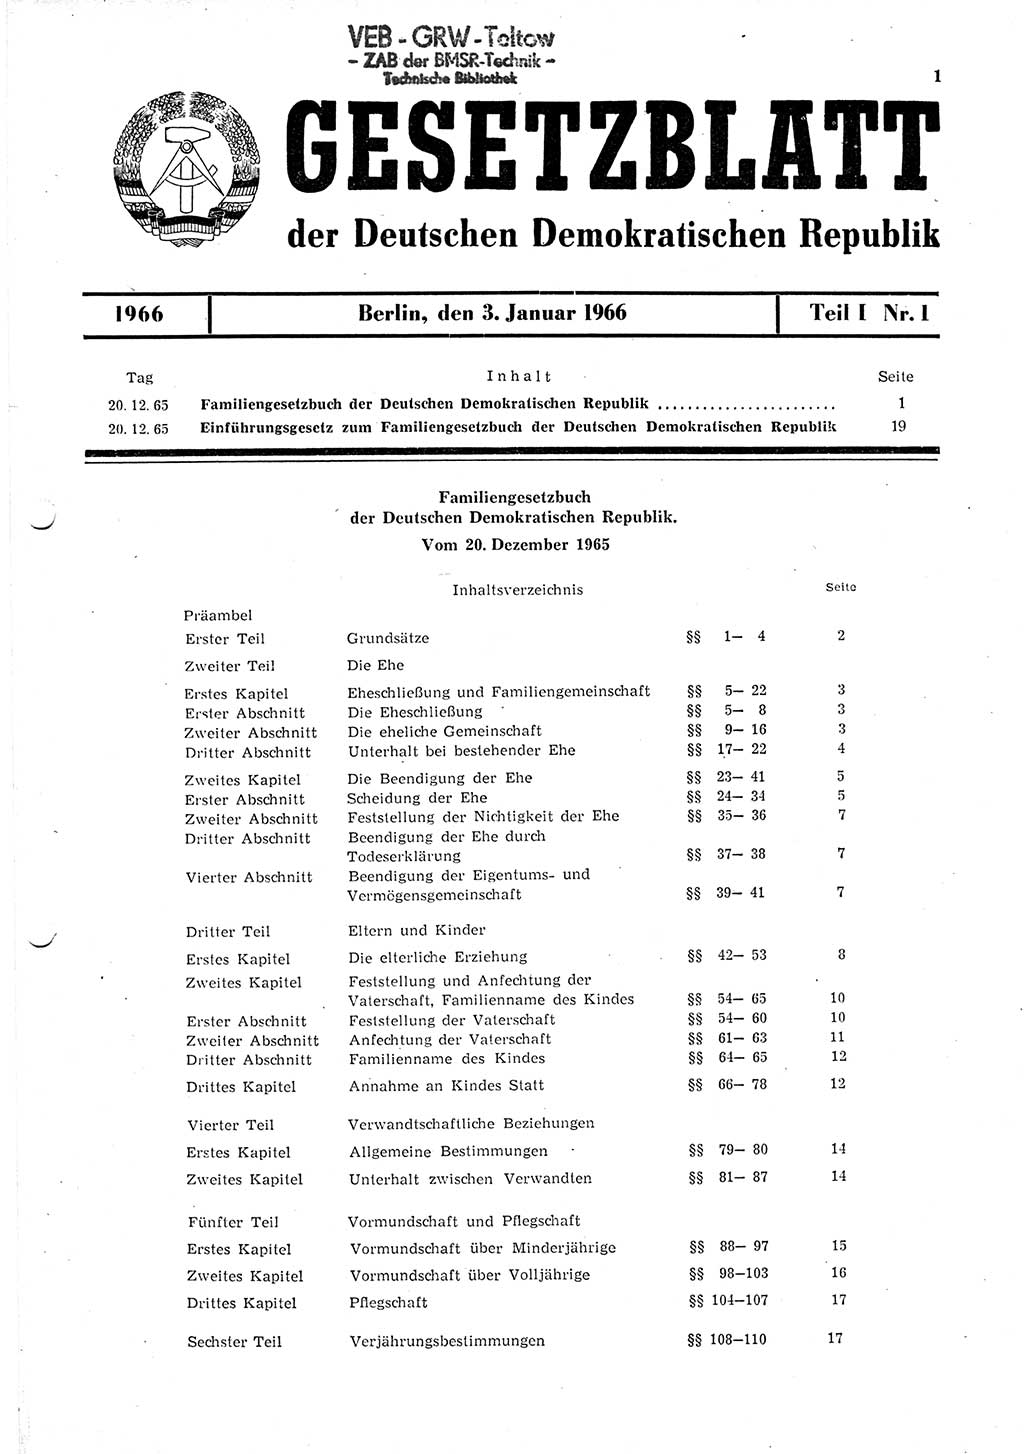 Gesetzblatt (GBl.) der Deutschen Demokratischen Republik (DDR) Teil Ⅰ 1966, Seite 1 (GBl. DDR Ⅰ 1966, S. 1)